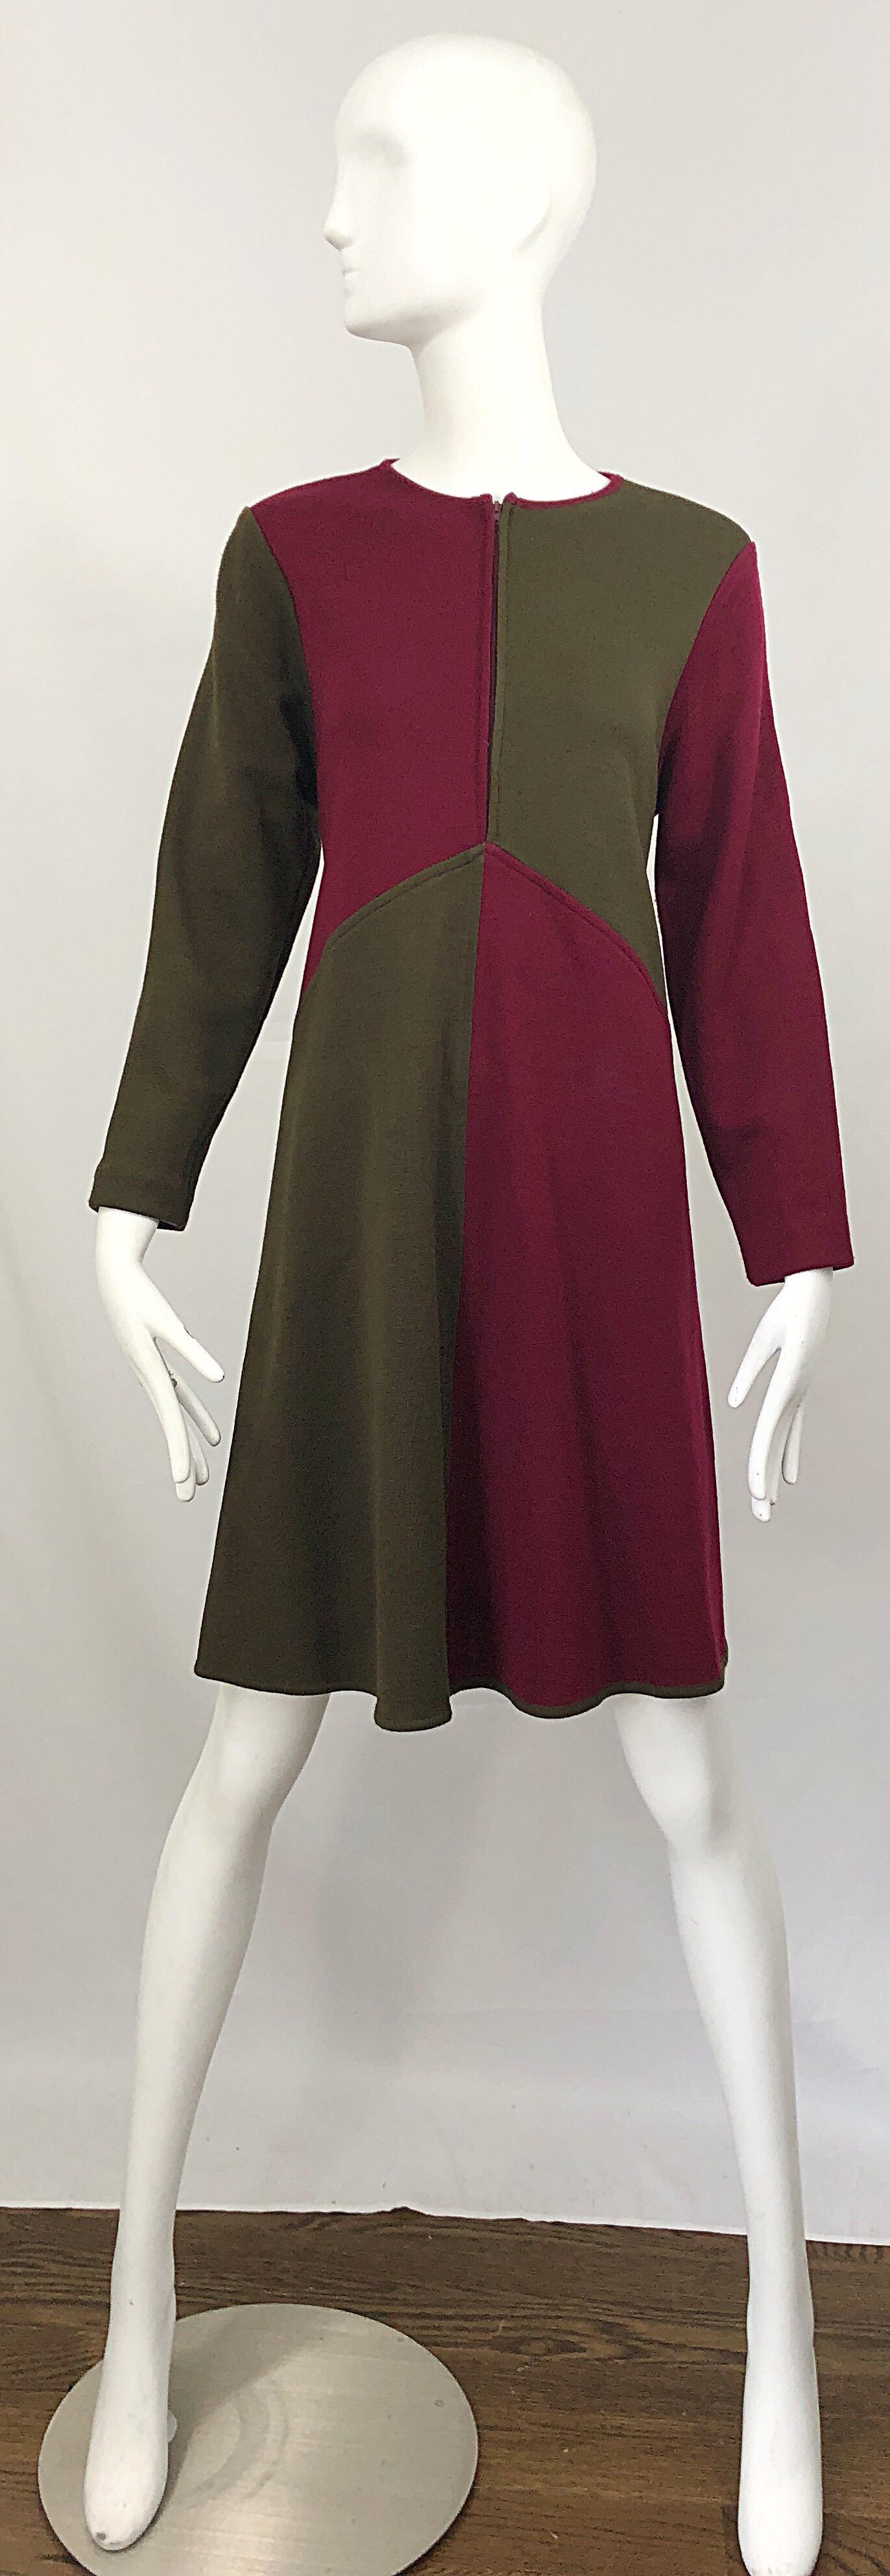 Vintage HARVE BENARD by BENARD HOLTZMAN 60s style long sleeve color block wool knit swing / Trapeze A-Line dress ! Le corsage est ajusté et le corps, très souple, est en forme de balancier. Panneaux de couleur marron / bordeaux et marron. La